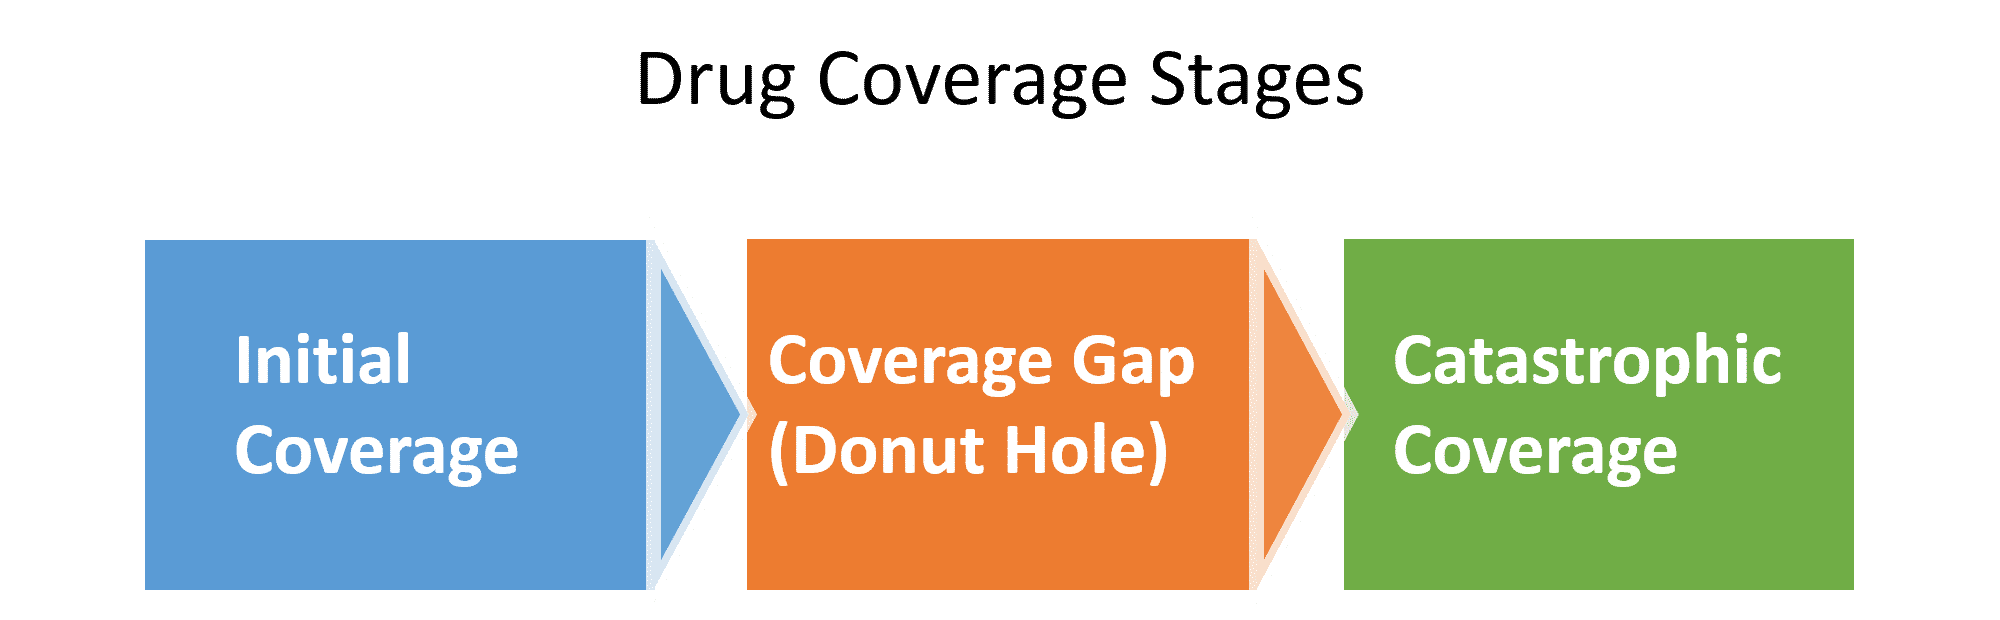 Medicare Part D: Drug Coverage Stages